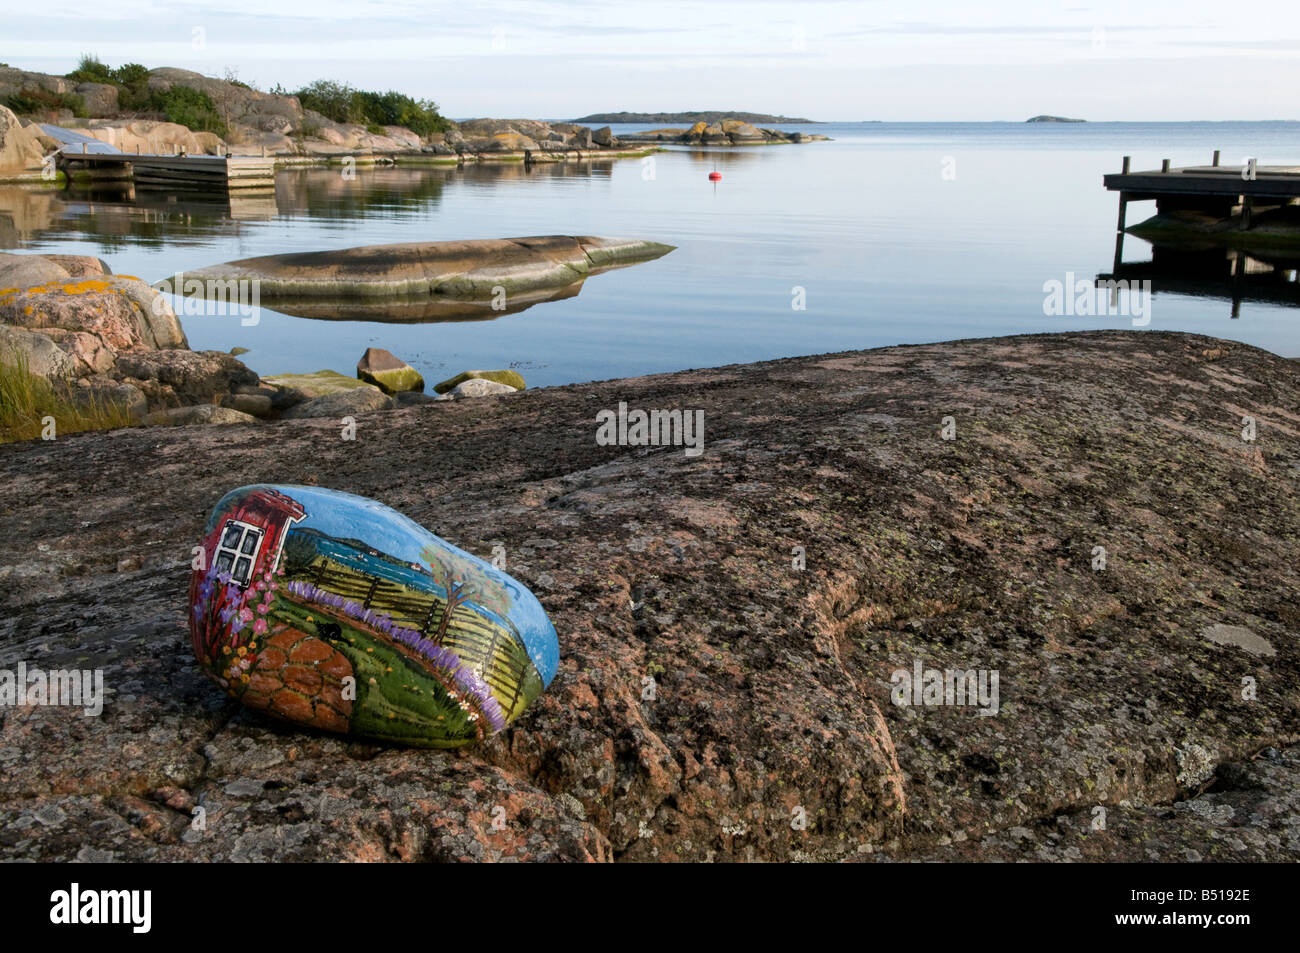 Dipinte a mano e pietra, accogliendo i visitatori, sulle rocce in calma baia, sull'isola di Västerö, Rödlöga nell'arcipelago di Stoccolma Foto Stock